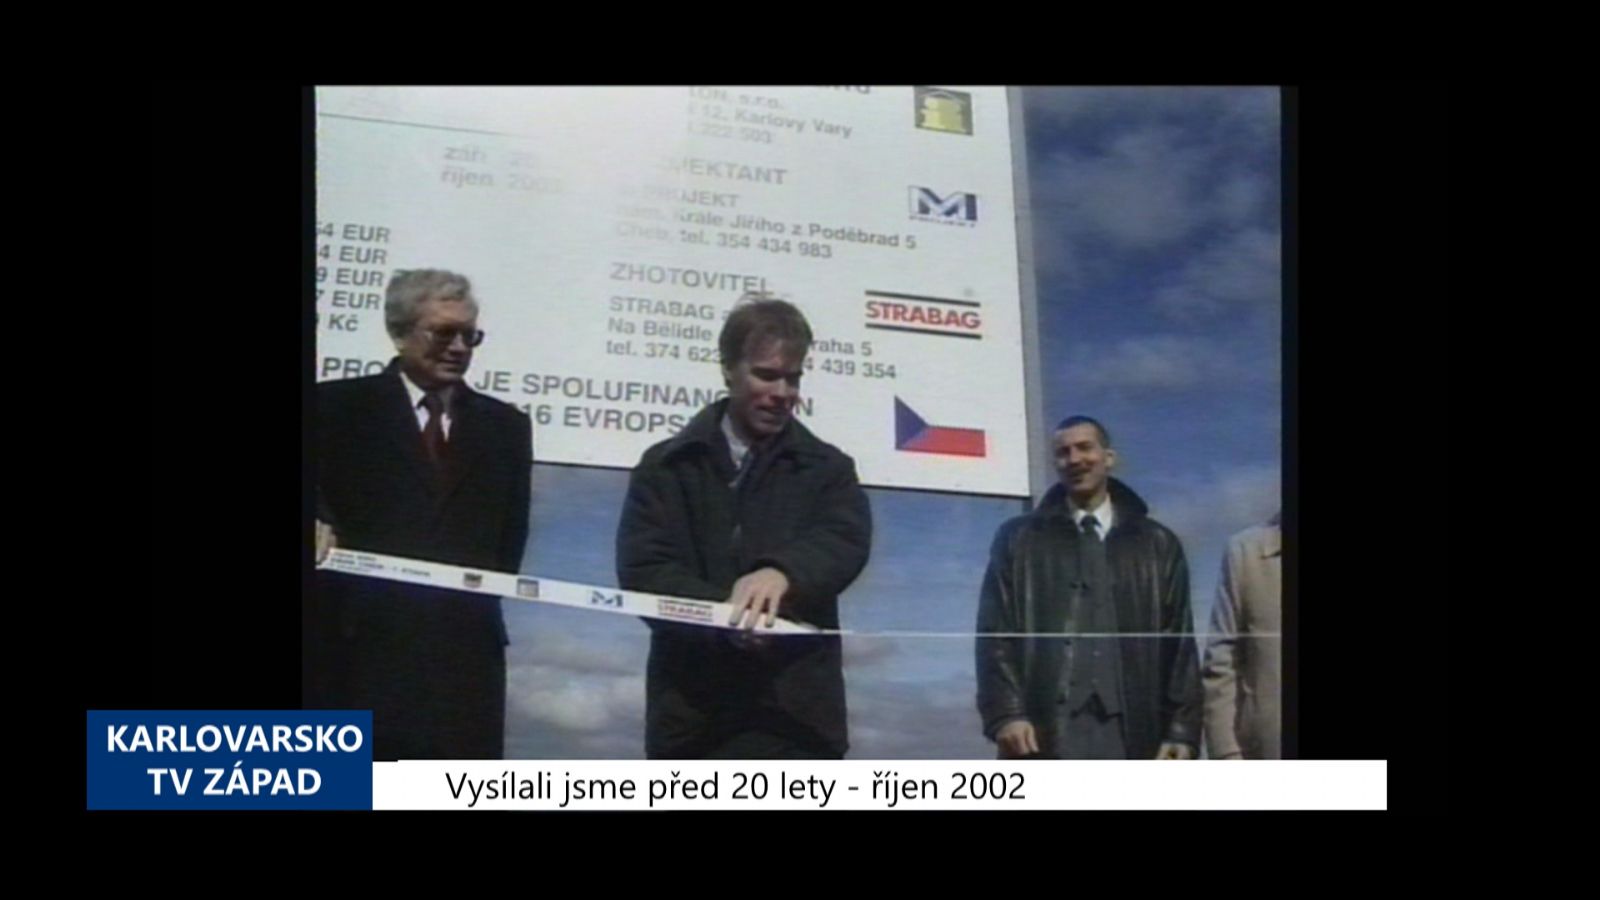 2002 – Cheb: Výstavba Průmyslového parku byla zahájena (TV Západ)